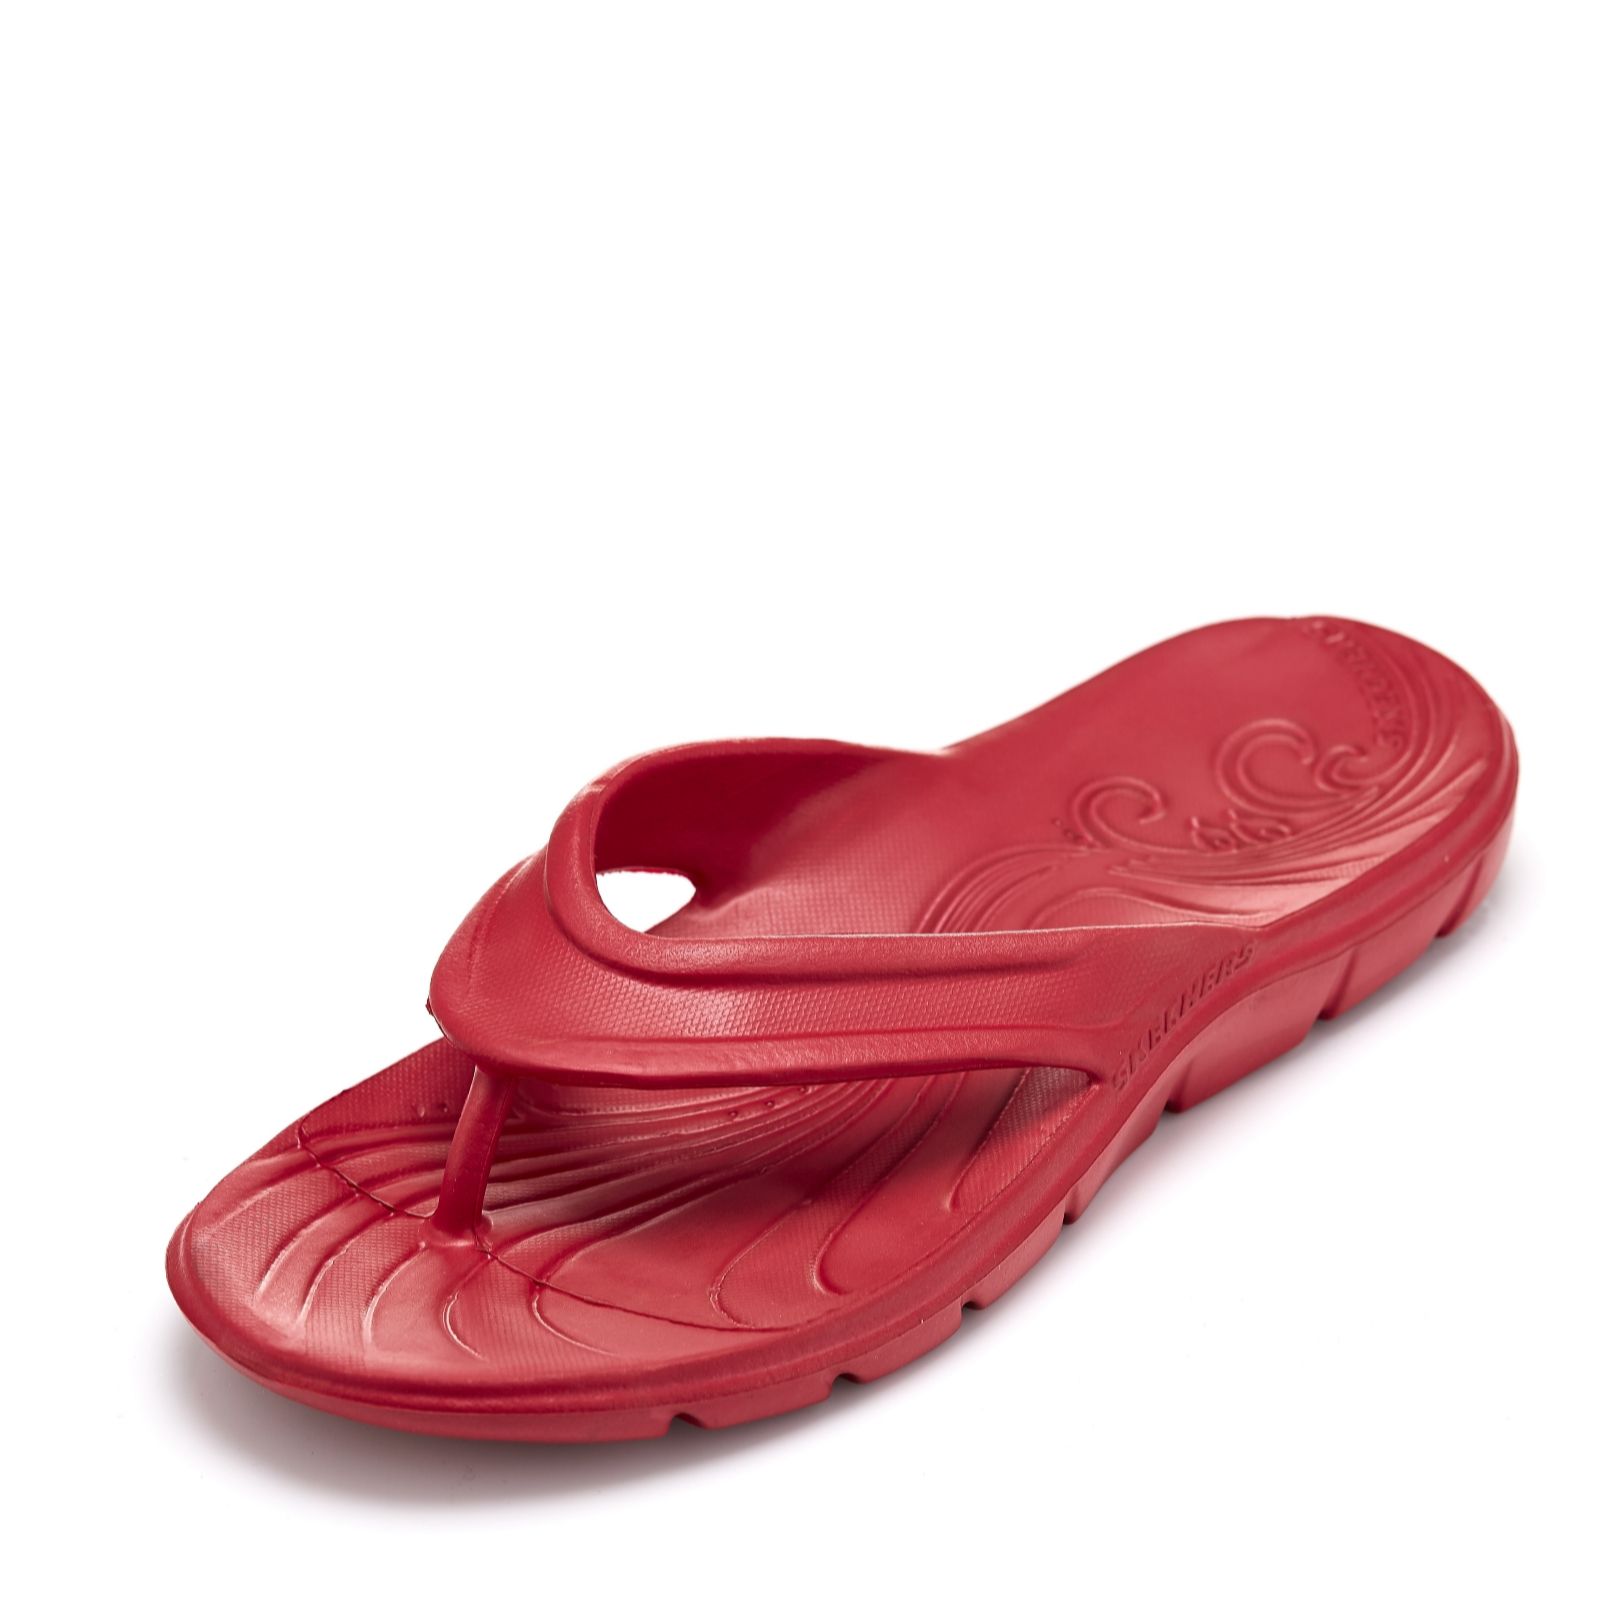 skechers toe post sandals